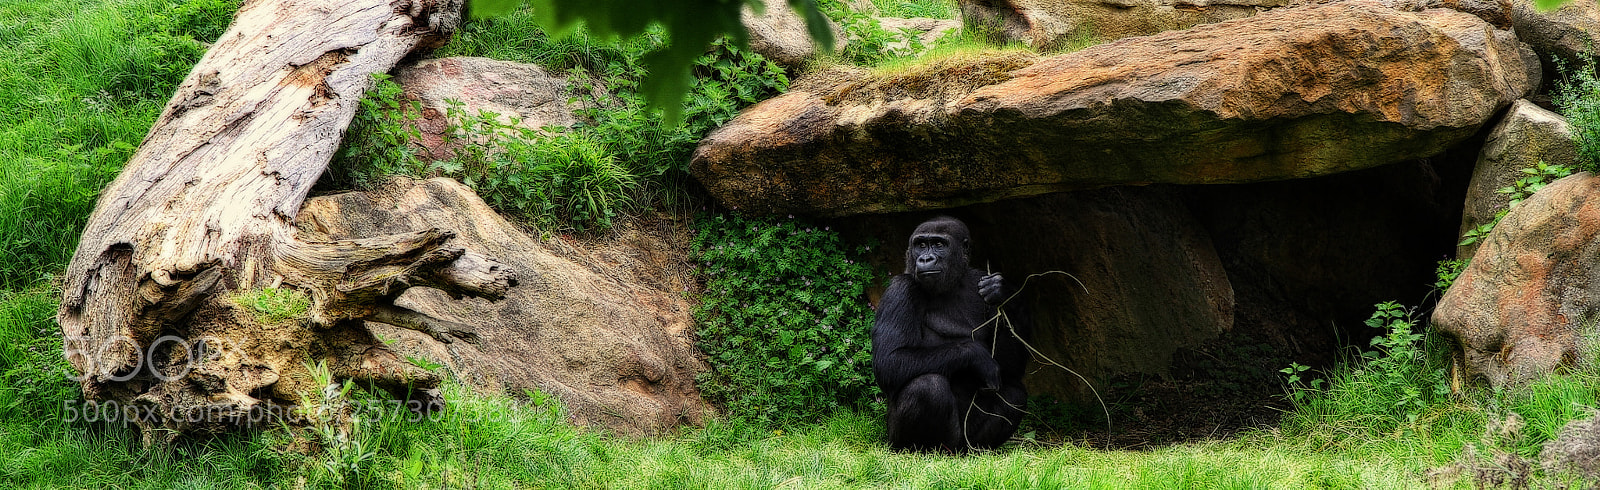 Canon EOS 7D sample photo. Gorilla photography